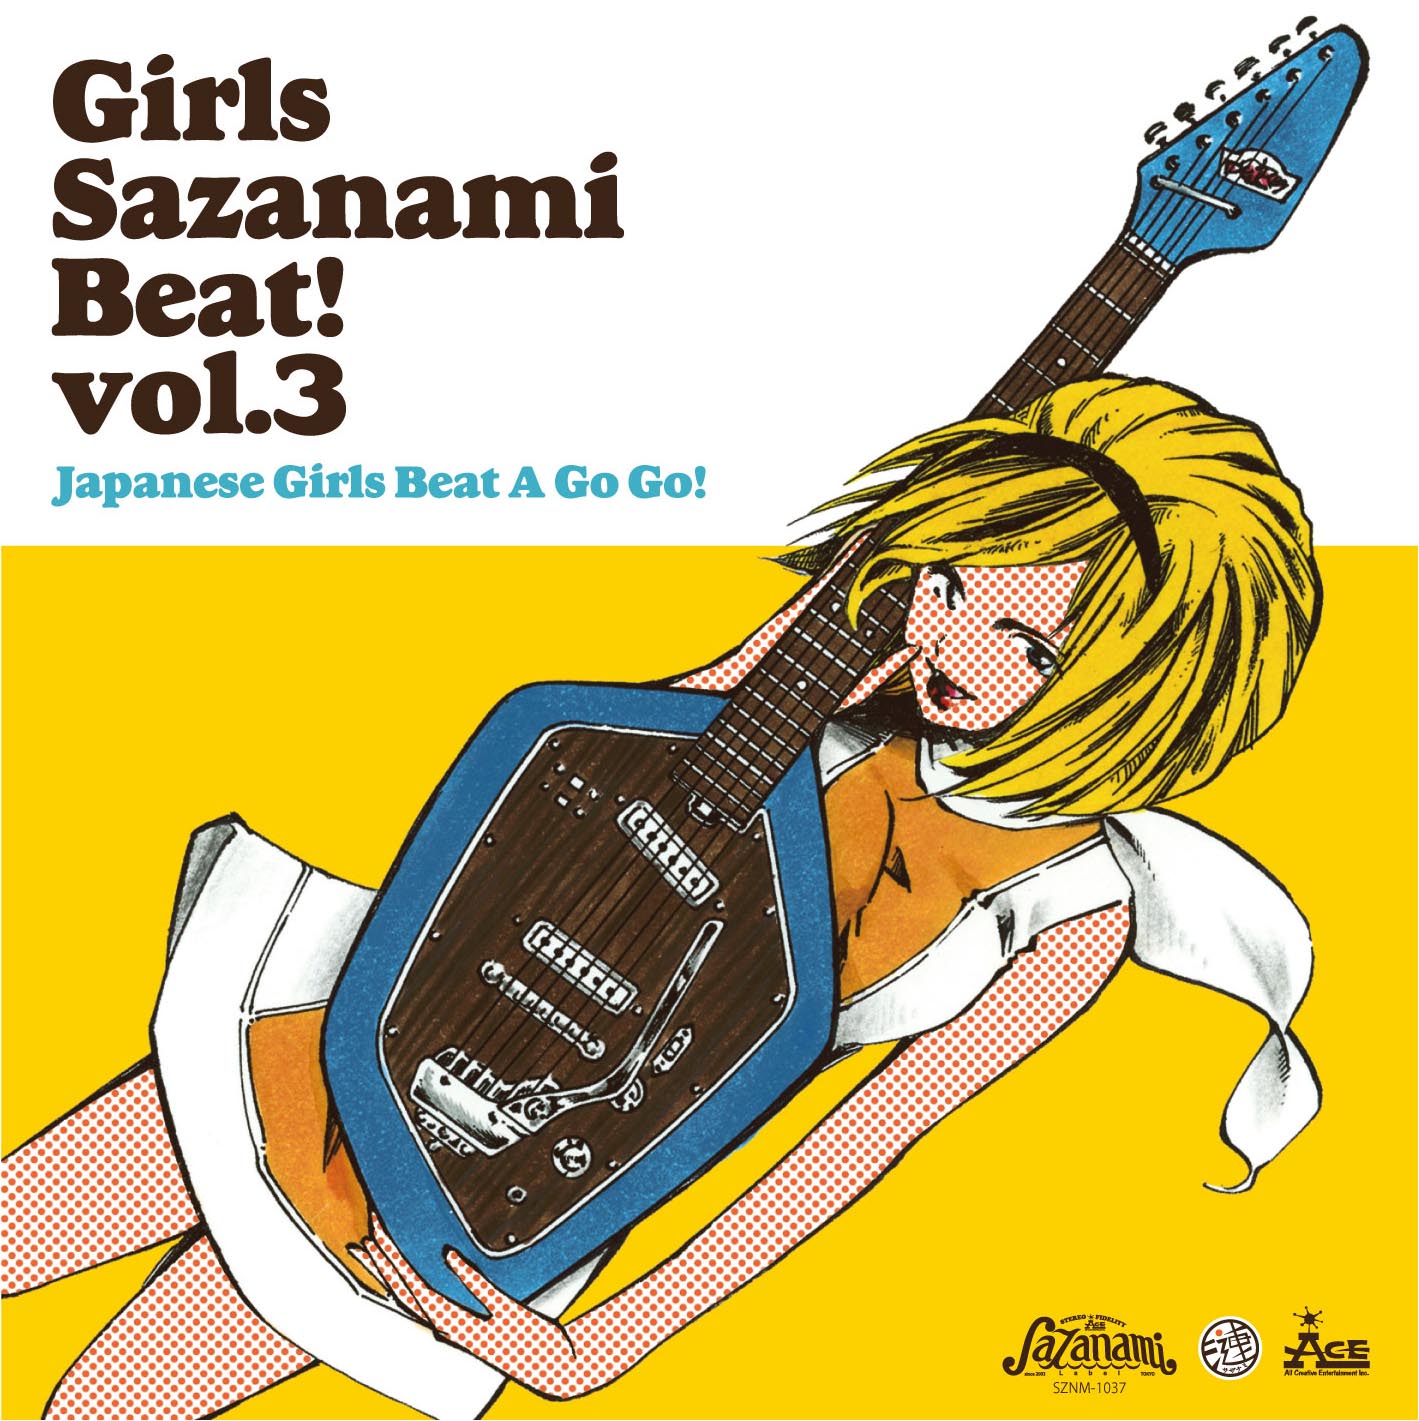 Girls Sazanami Beat Vol 3 Sazanami Label Blog